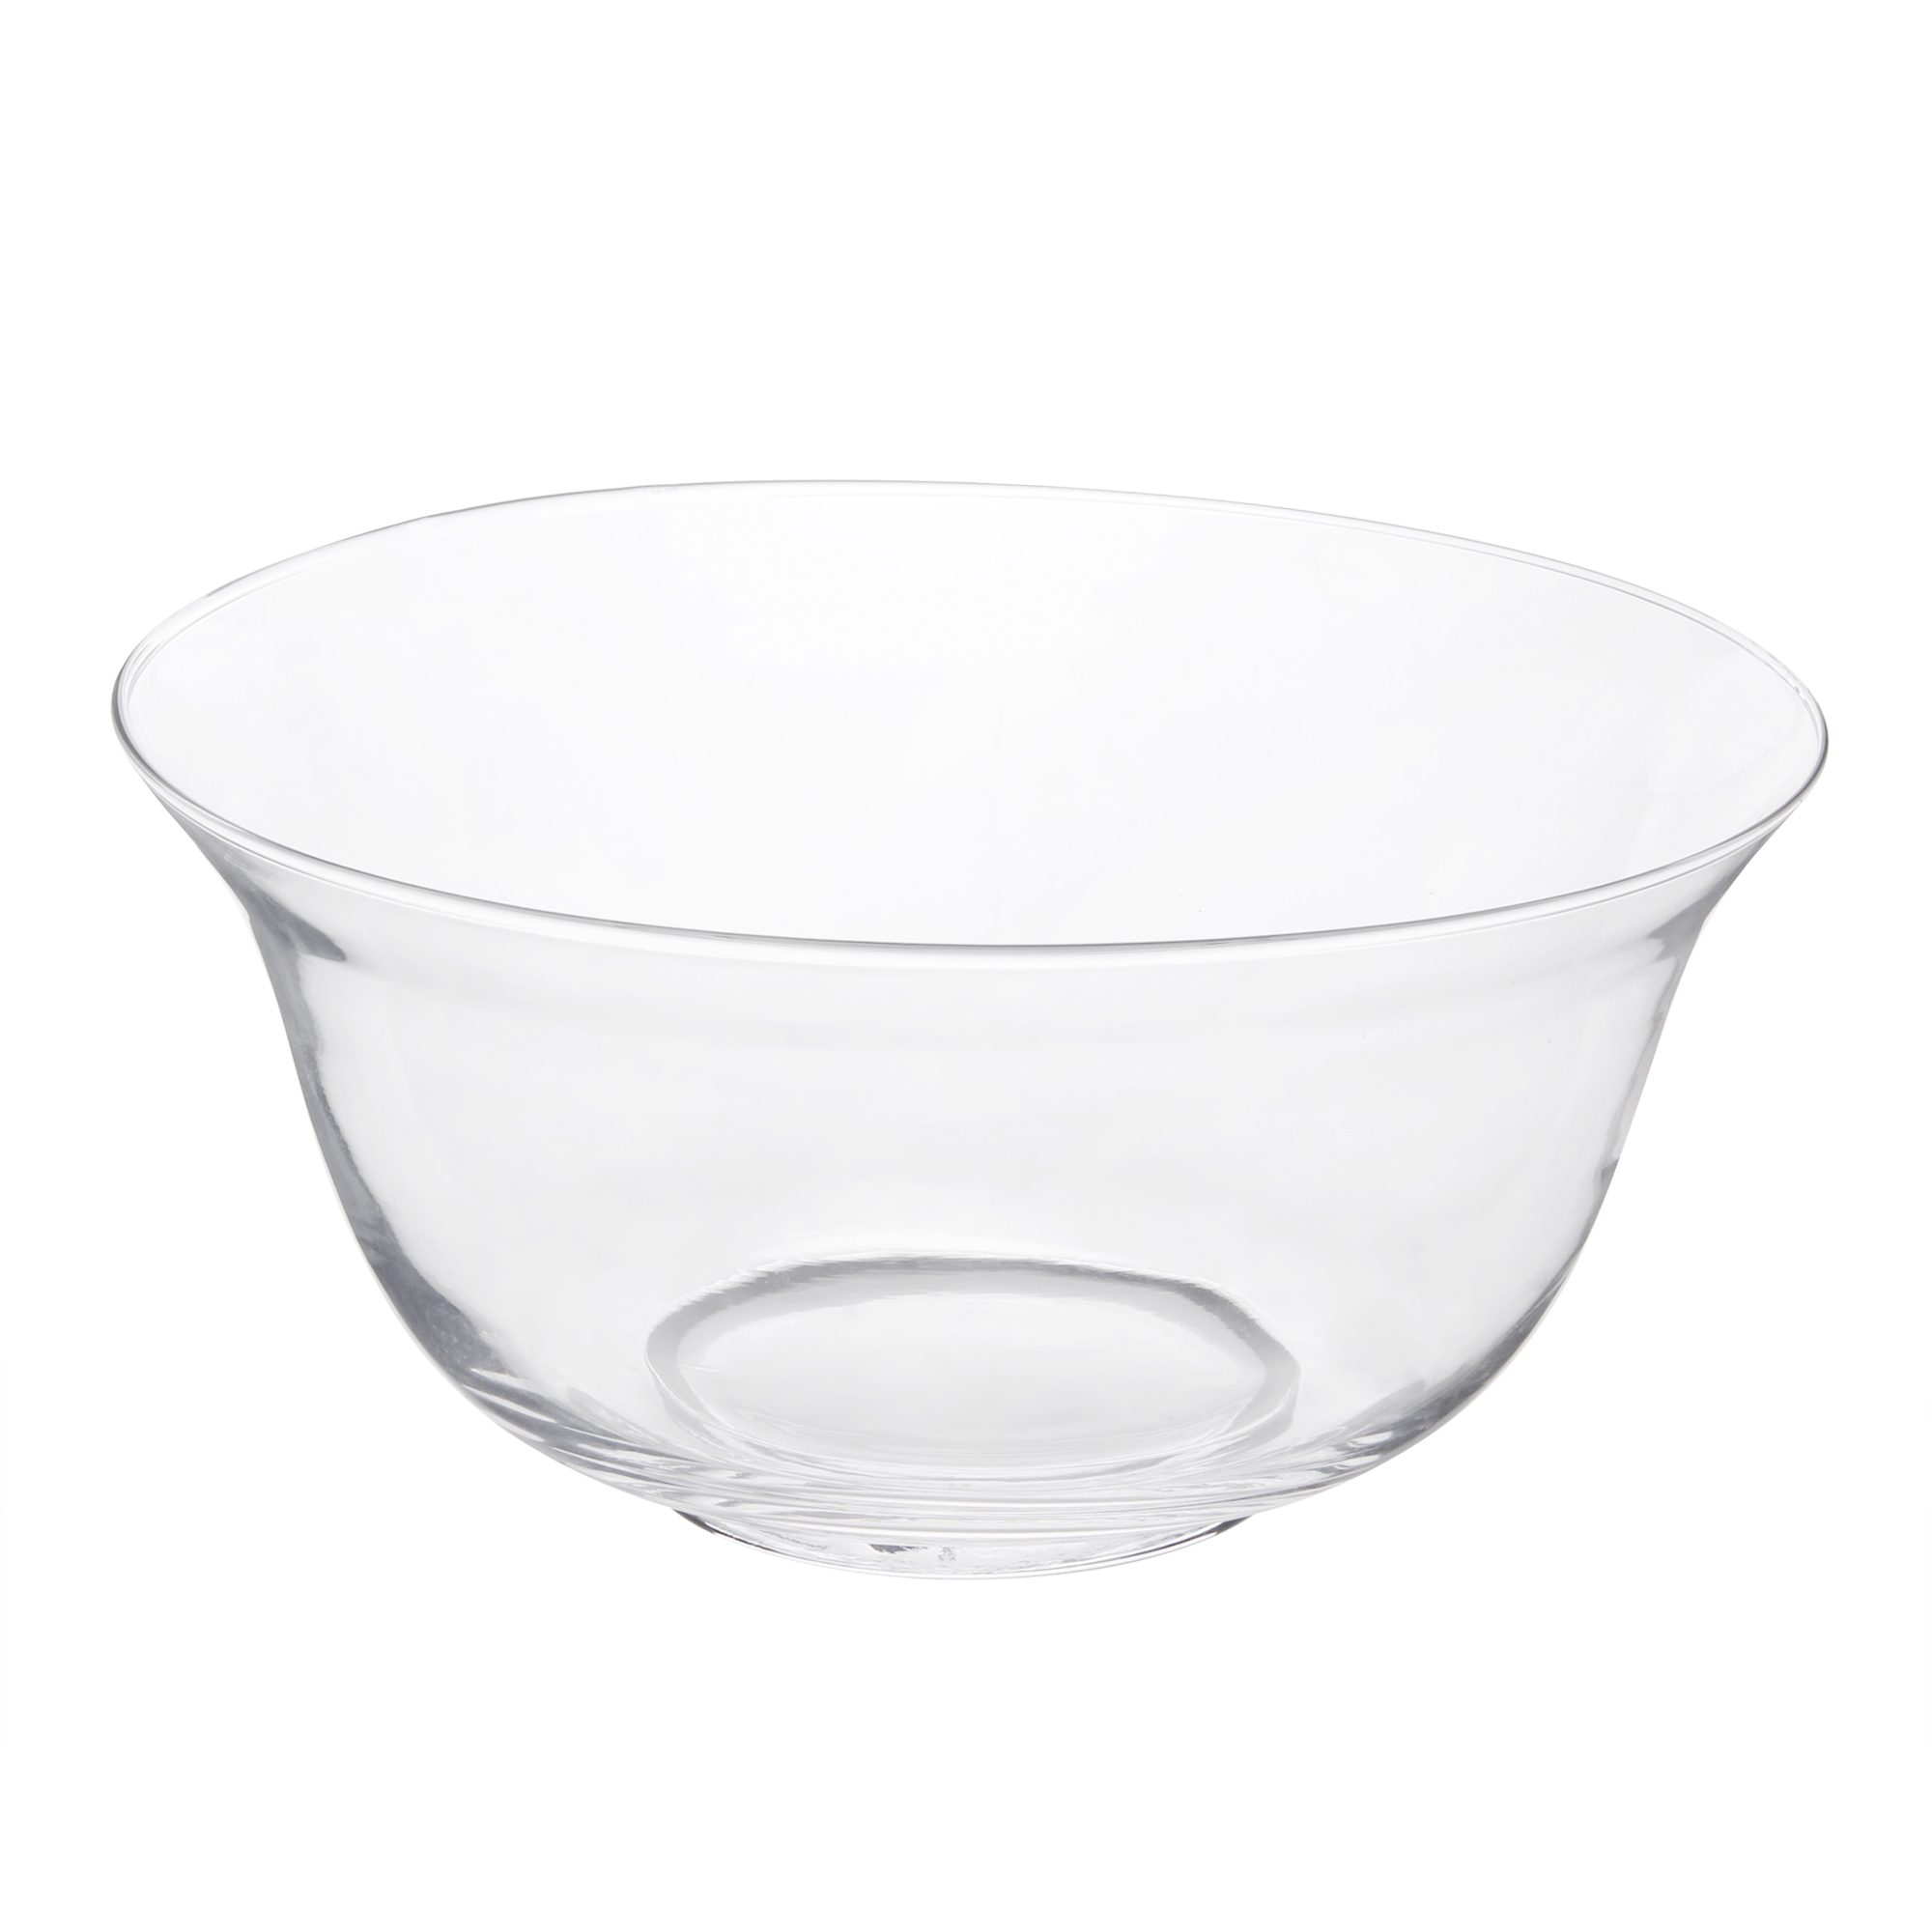 фото Блюдо д29см 14см hackbijl glas bowl hackbijl glass